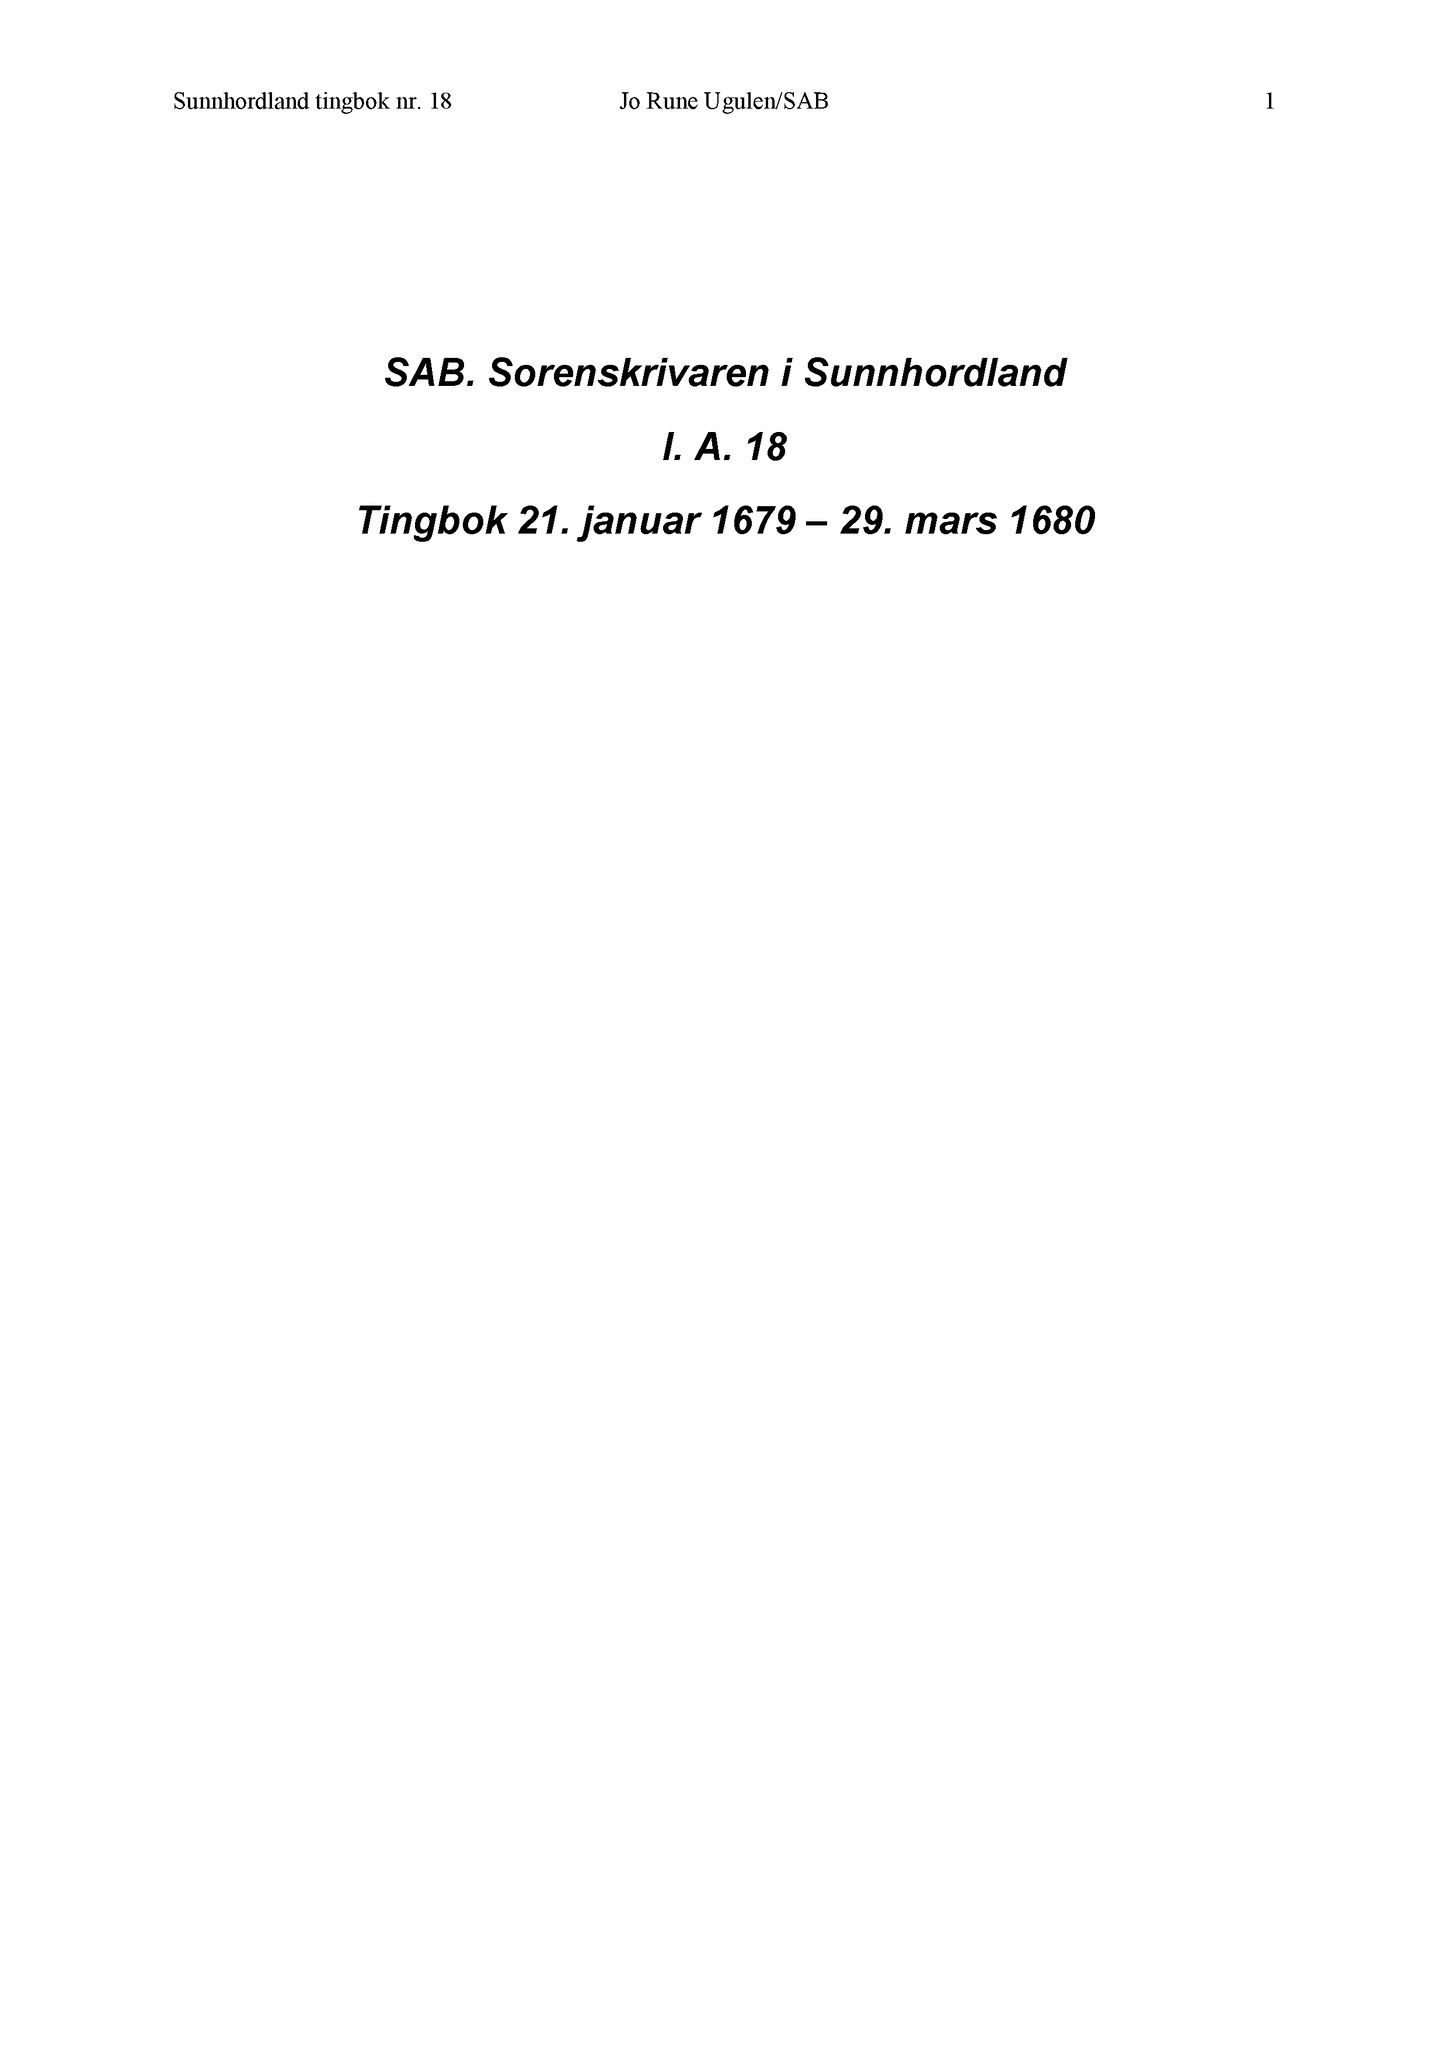 Samling av fulltekstavskrifter, SAB/FULLTEKST/A/12/0020: Sunnhordland sorenskriveri, tingbok nr. A 18, 1679-1680